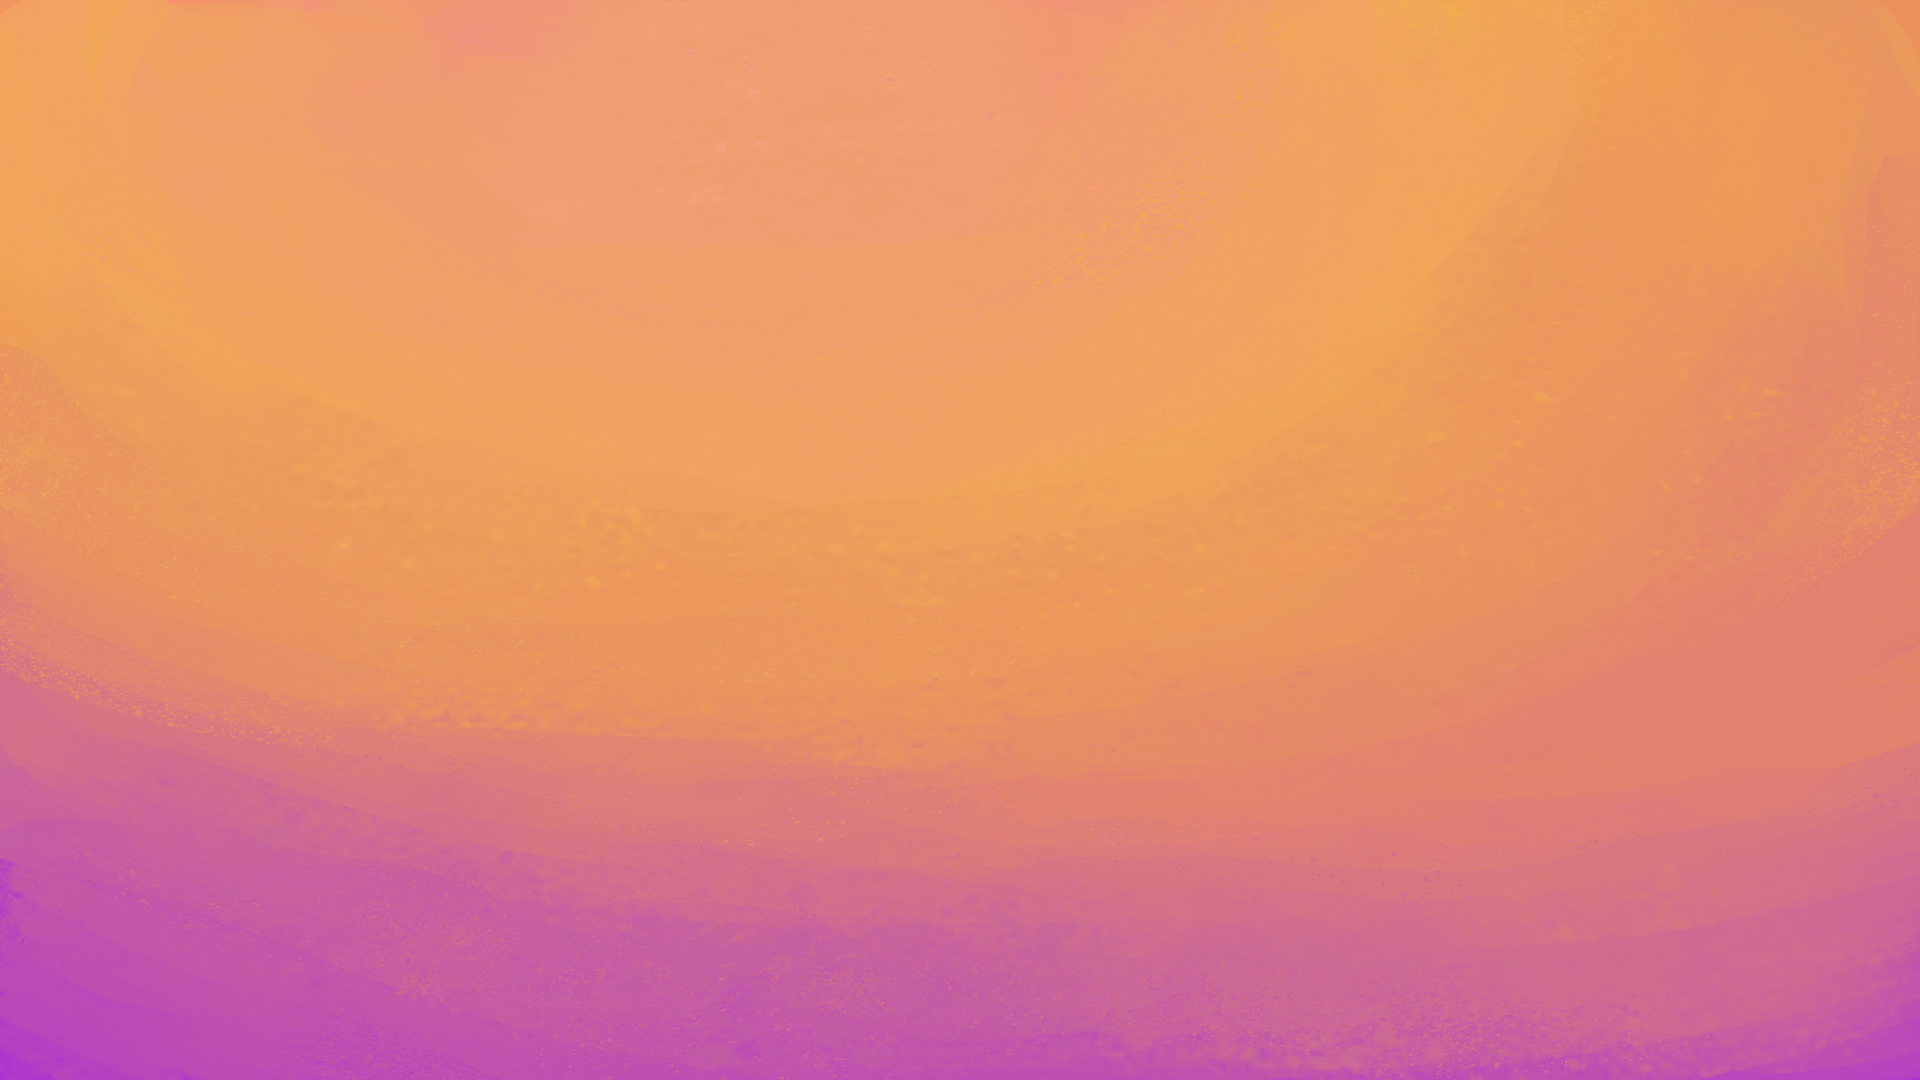 General 1920x1080 simple background minimalism painting digital painting digital art artwork gradient pink orange abstract